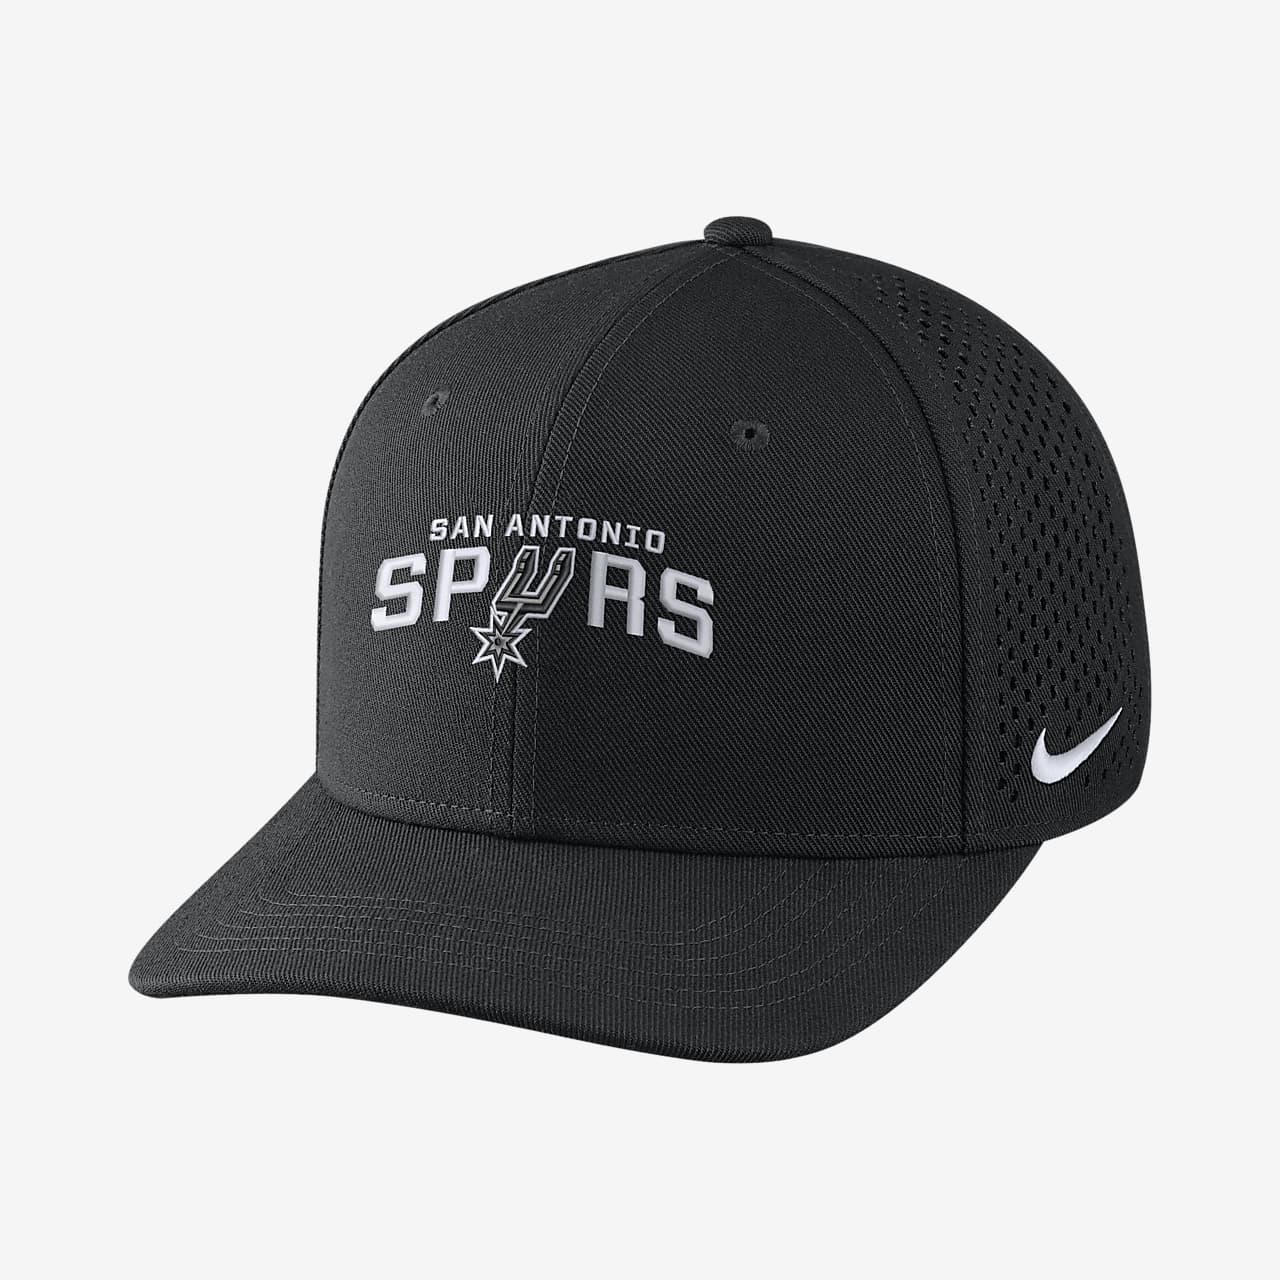 San Antonio Spurs Nike AeroBill Classic99 Unisex Adjustable NBA Hat ...